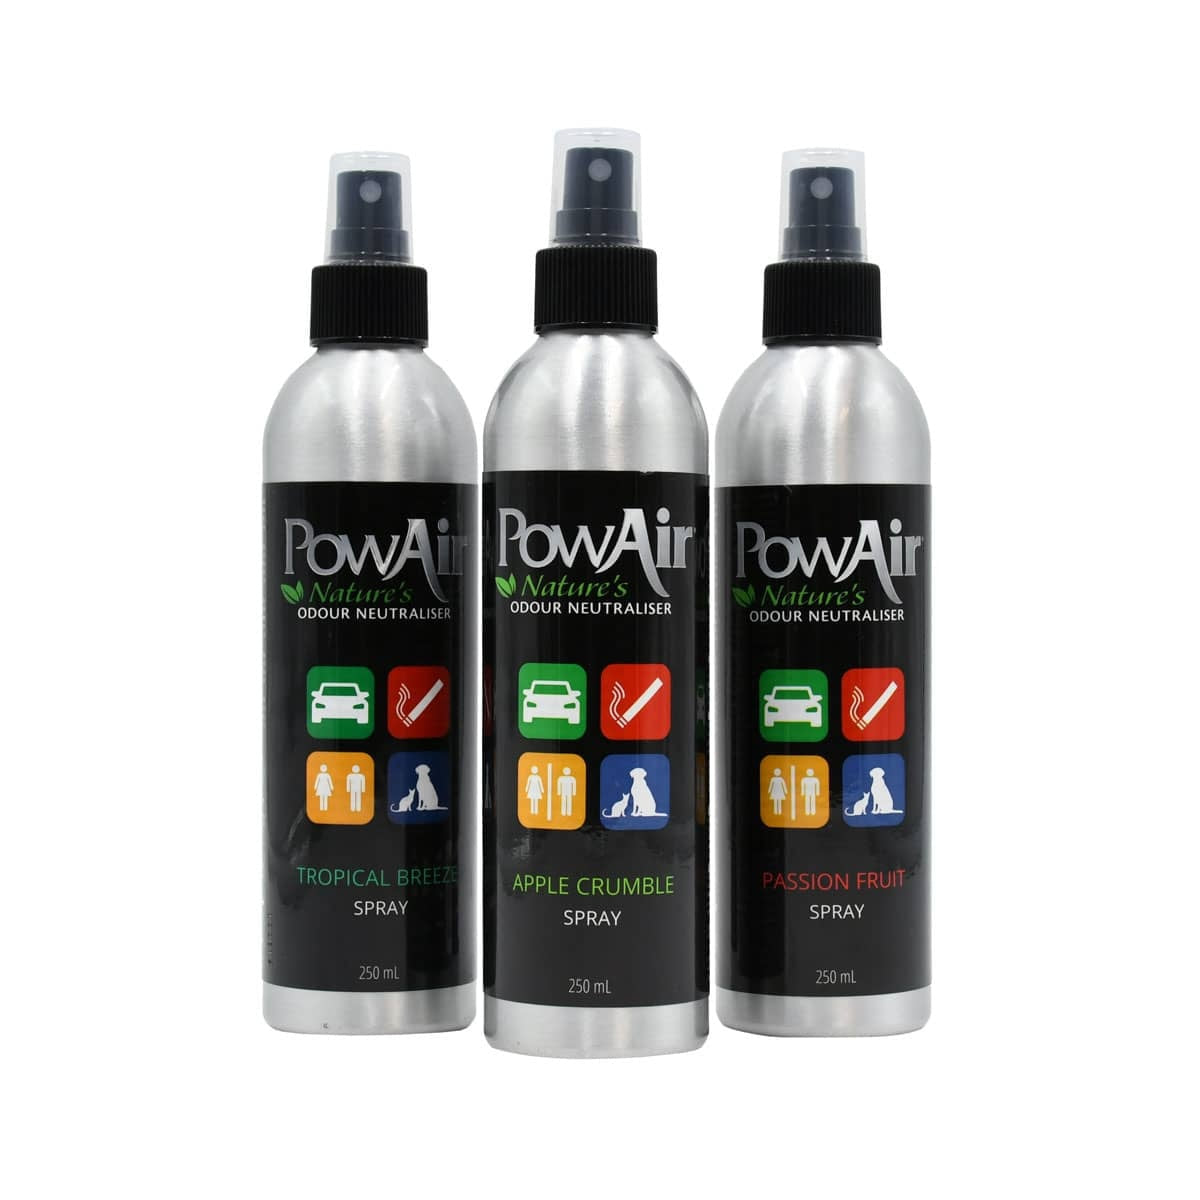 PowAir Odour Neutraliser Spray 250ml Passion Fruit